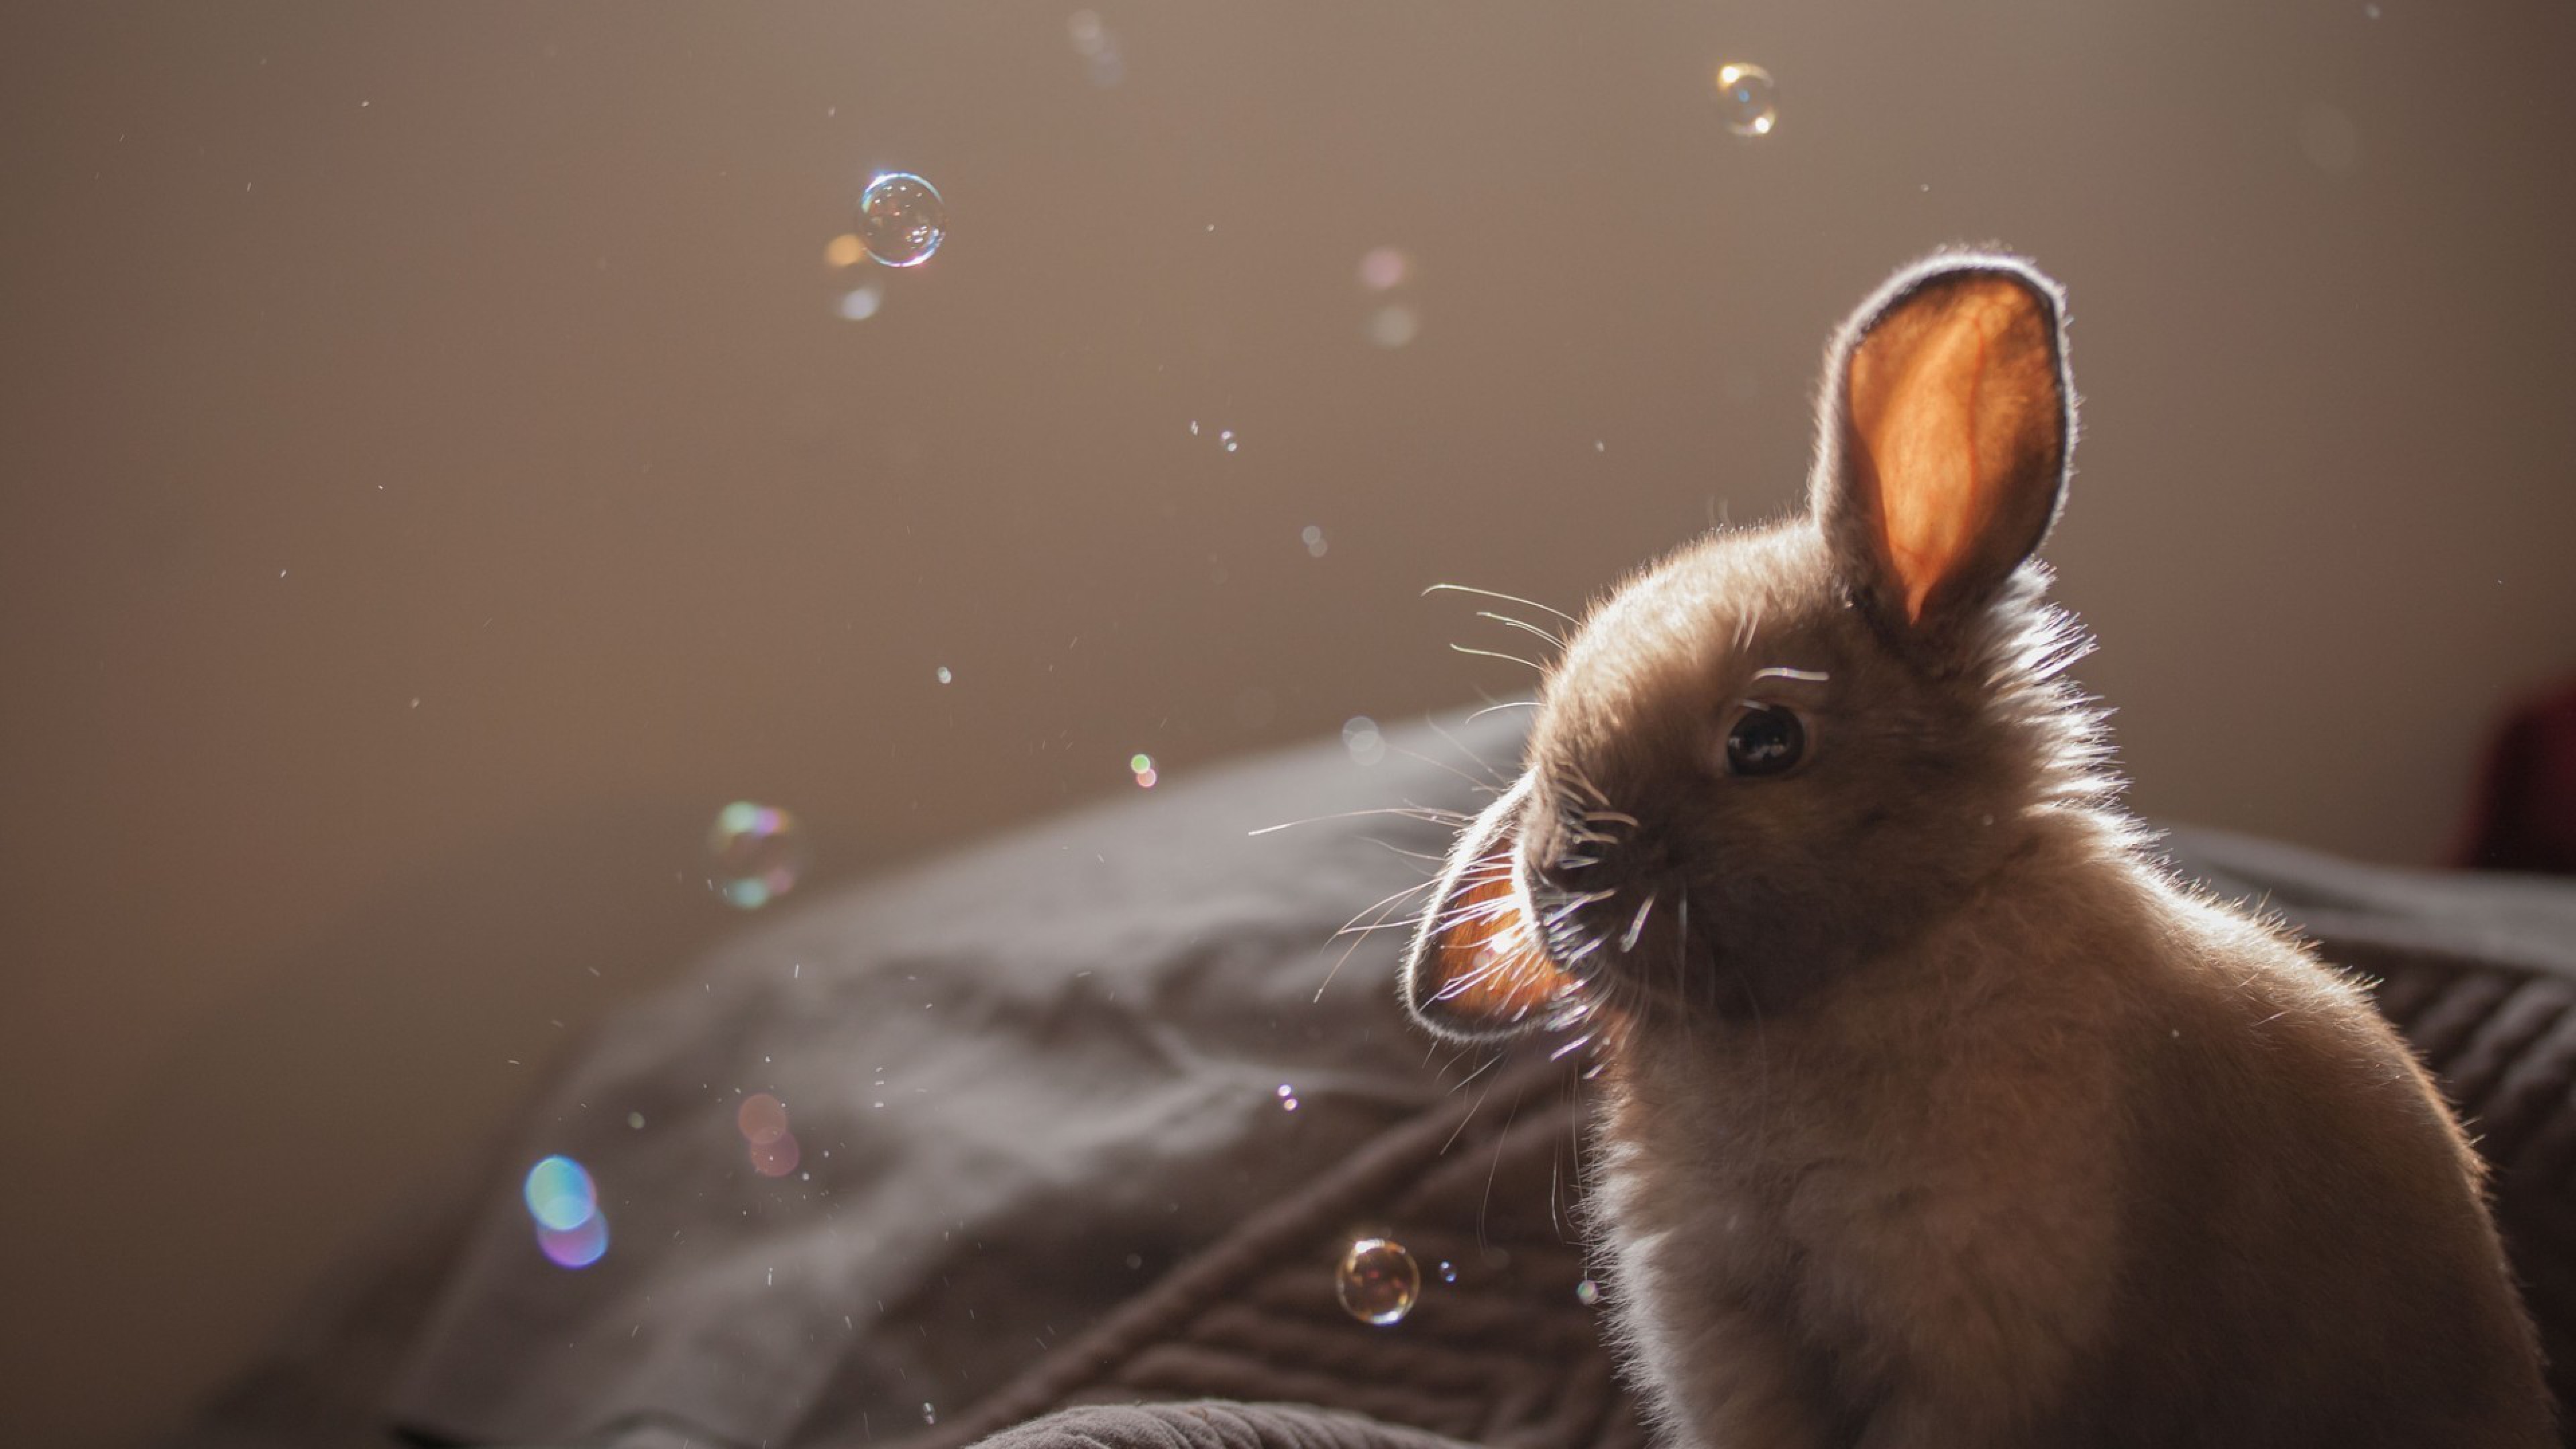 Thỏ là một trong những động vật đáng yêu nhất trên thế giới. Với đôi tai dài và lông mềm mượt, chúng đem lại cho người xem cảm giác dễ chịu và thoải mái. Hãy xem hình ảnh để tận hưởng những khoảnh khắc đáng yêu của con thỏ này.